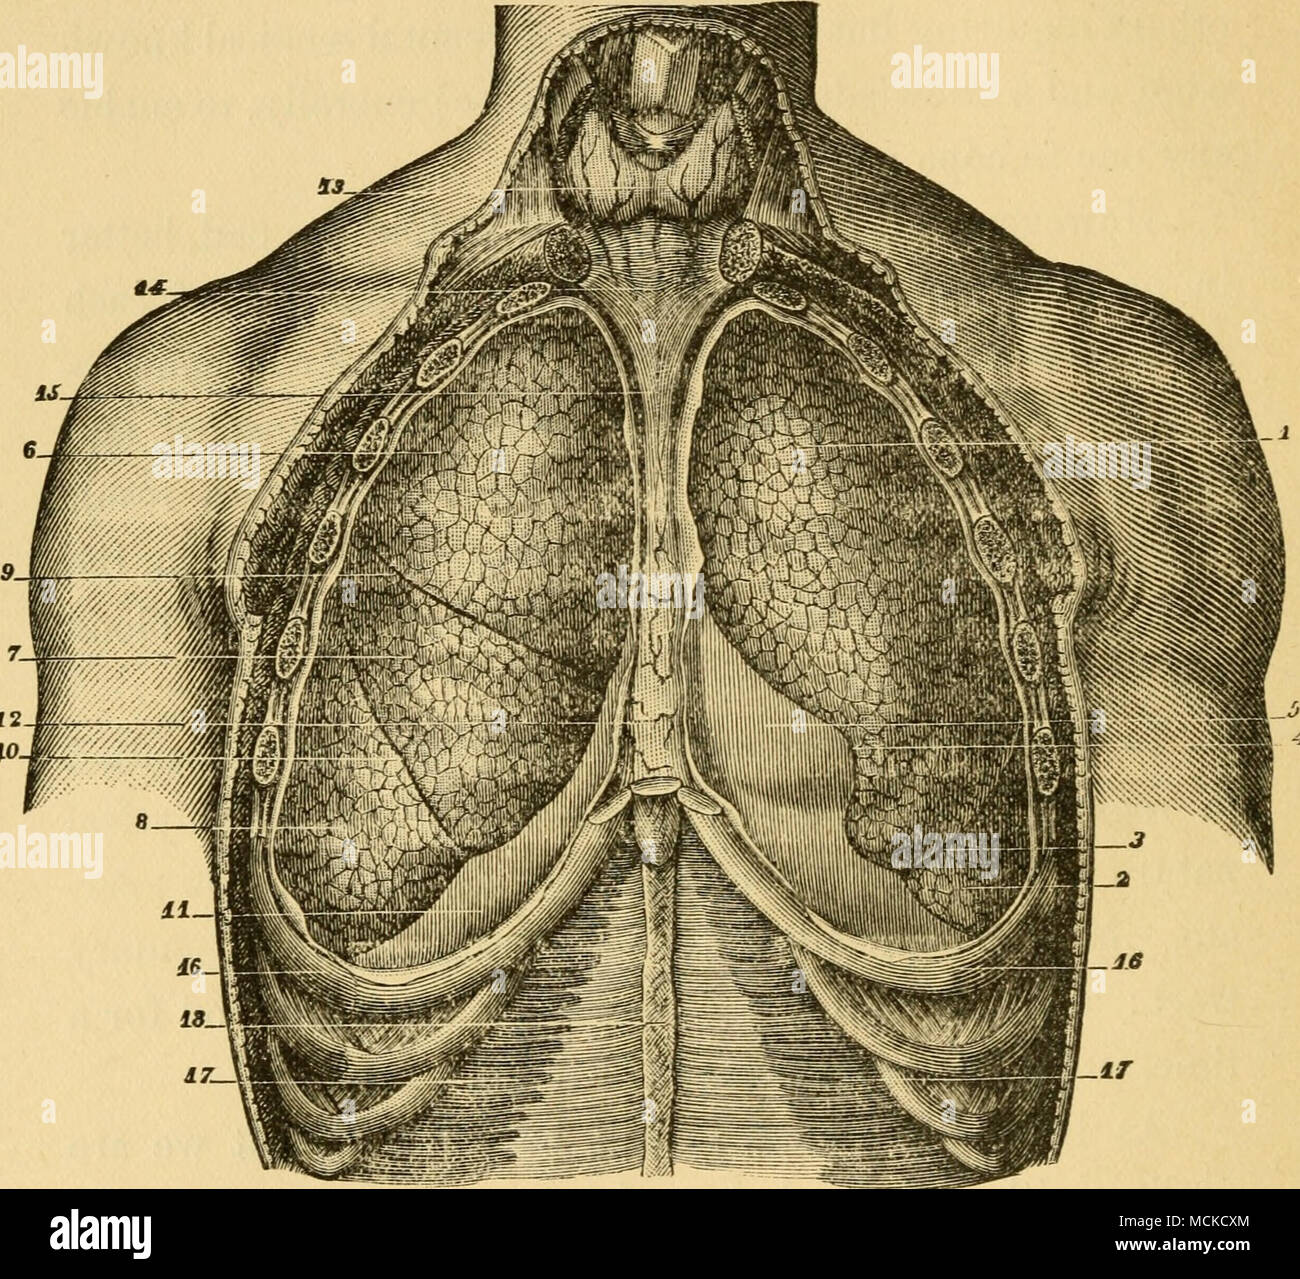 . FiG. 12.-polmoni, vista anteriore (Sappey). 1, lobo superiore del polmone sinistro ; 2, lobo inferiore ; 3, fessura ; 4, tacca corrispondente all apice del cuore; 5, pericardio ; 6, lobo superiore del polmone destro : 7. lobo centrale ; 8, lobo inferiore ; 9, fessura ; 10, fissm"e ; 11, il diaframma ; 12, anteriore mediasti- num ; 13. della ghiandola tiroidea ; 14, medio aponeurosis cervicale; 15, processo di a- tachment del mediastino al pericardio ; 16, 16, settimo nervature ; 17, 17, trans- versales muscoli ; 18, linea alba. Sebbene questo taglio si riferisce all'umana sub- ject, le relazioni delle parti sono sostanzialmente le stesse nel cane. ing il naso Foto Stock